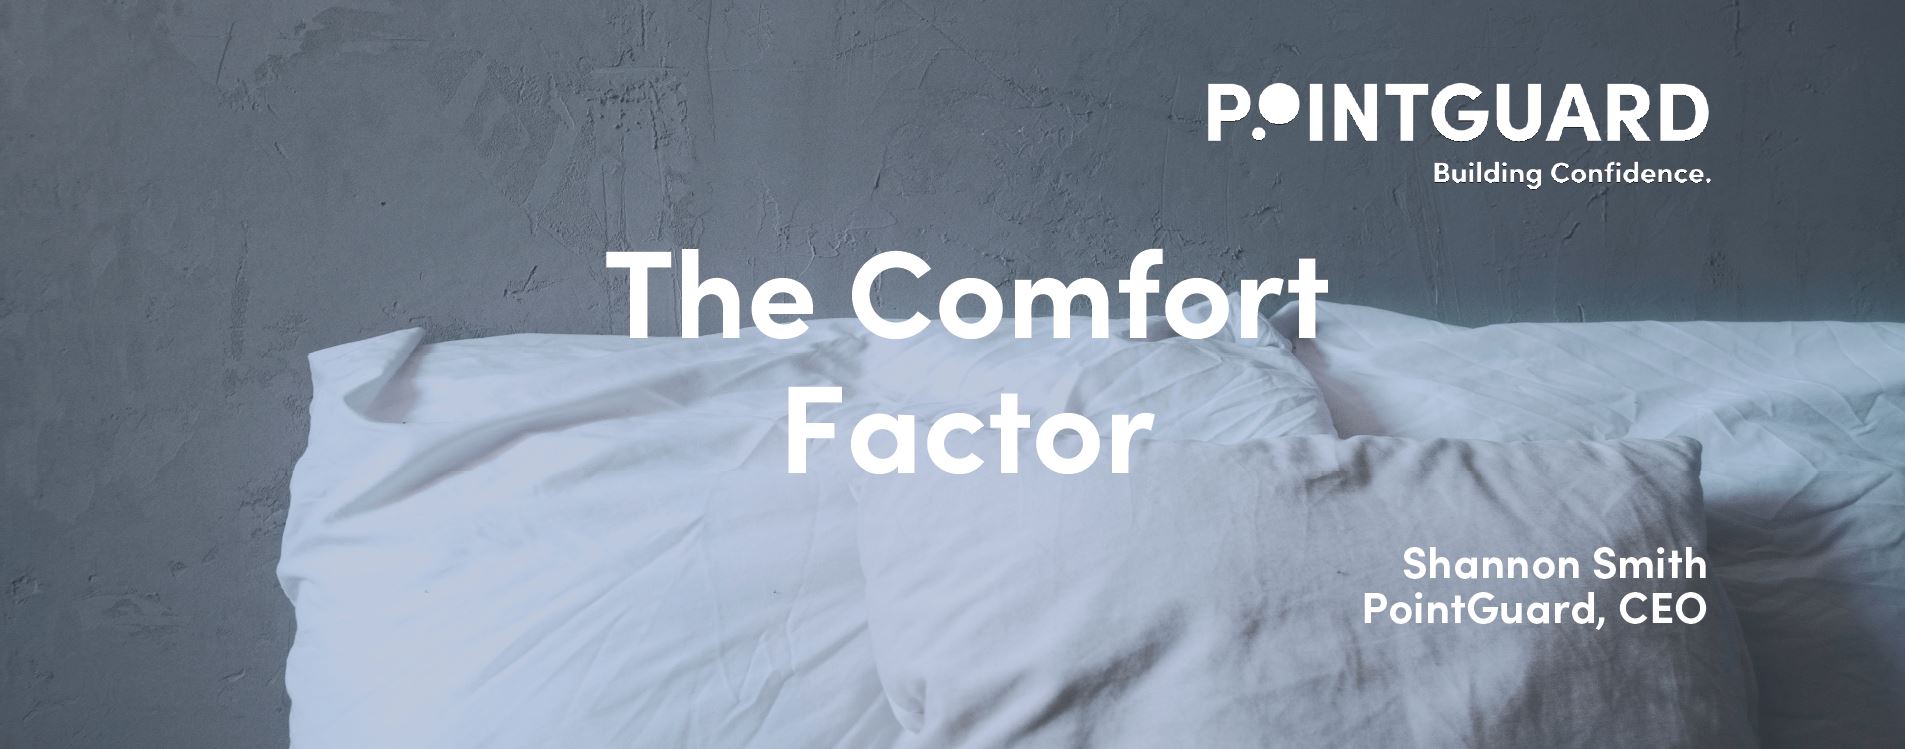 The Comfort Factor